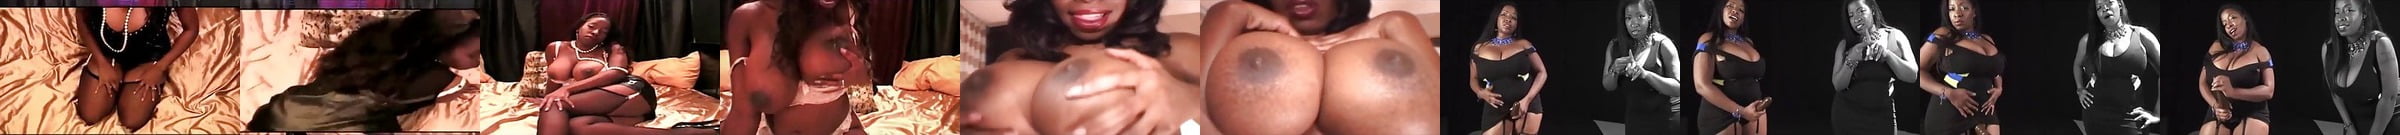 Black Pornstars Porn Videos Xhamster